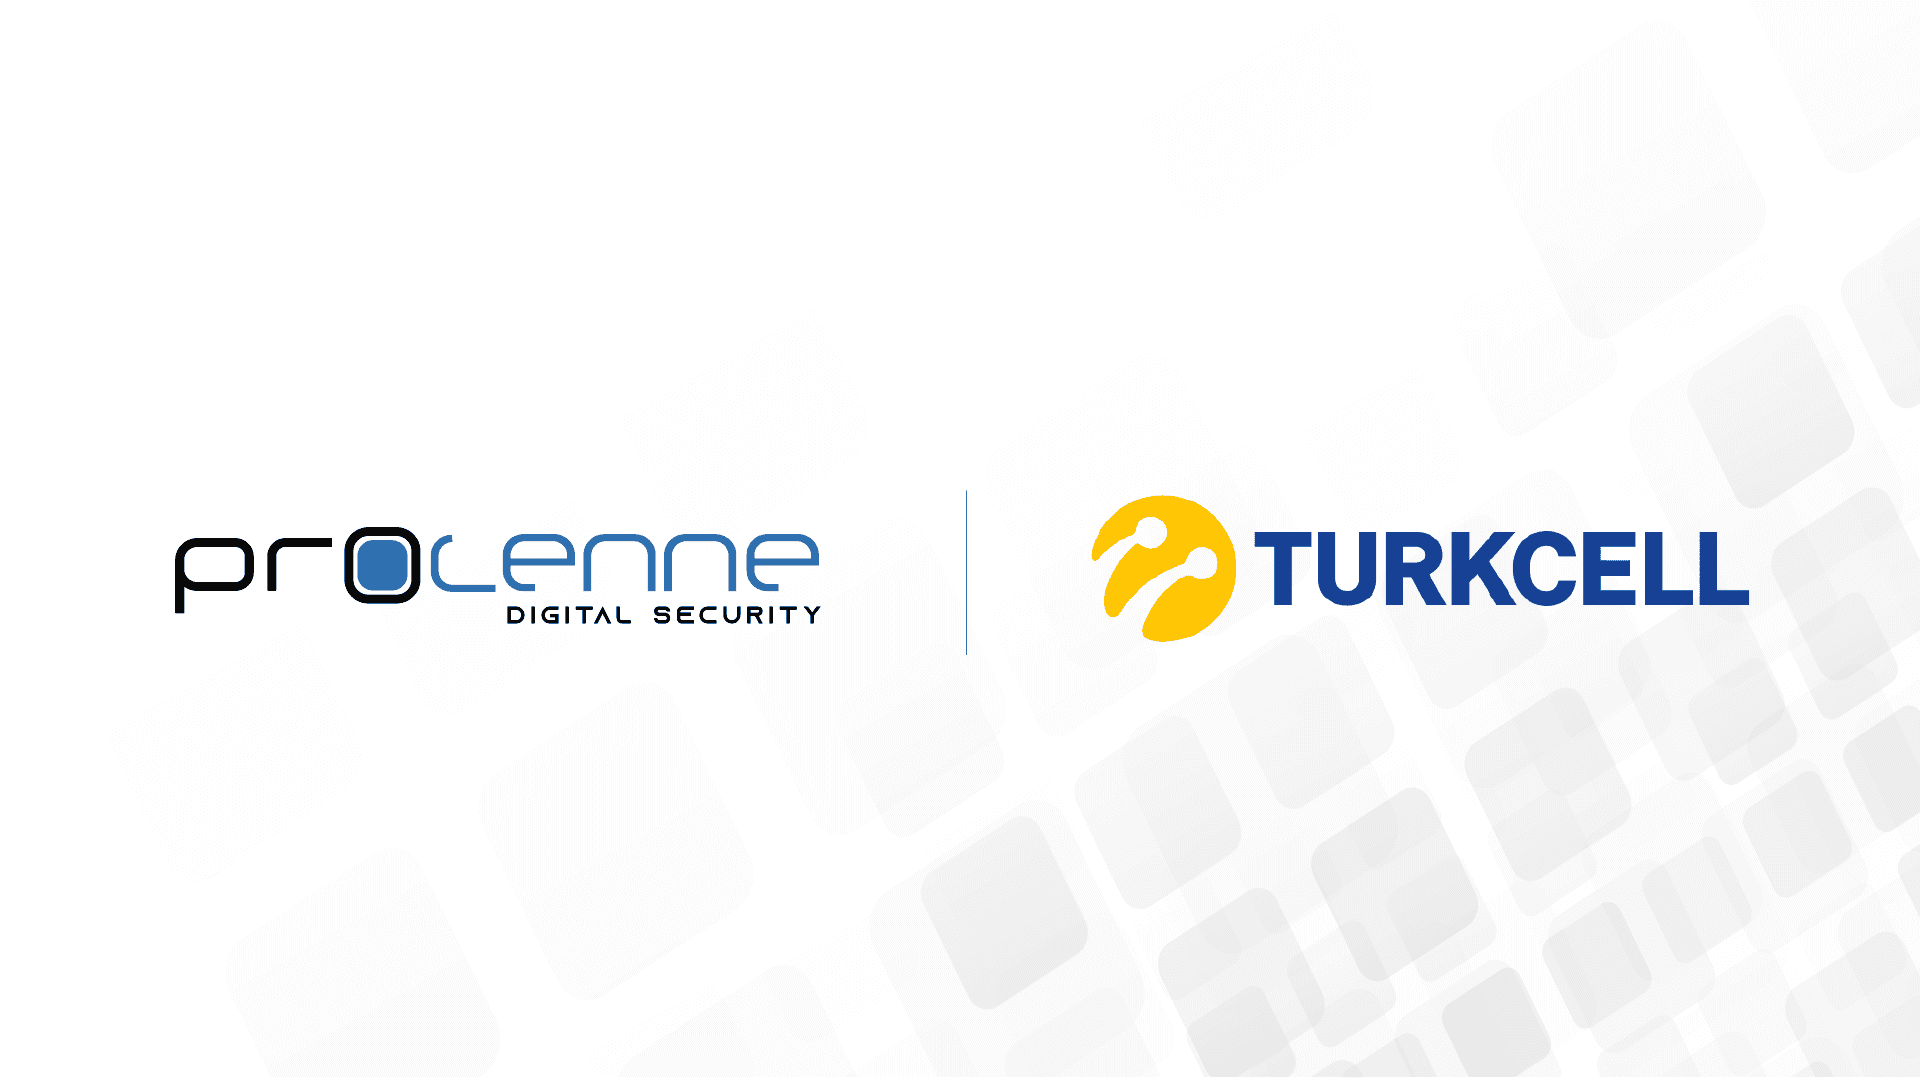 Turkcell Yeni Teknolojiler Girişim Sermayesi Yatırım Fonu’ndan Procenne Yatırımı